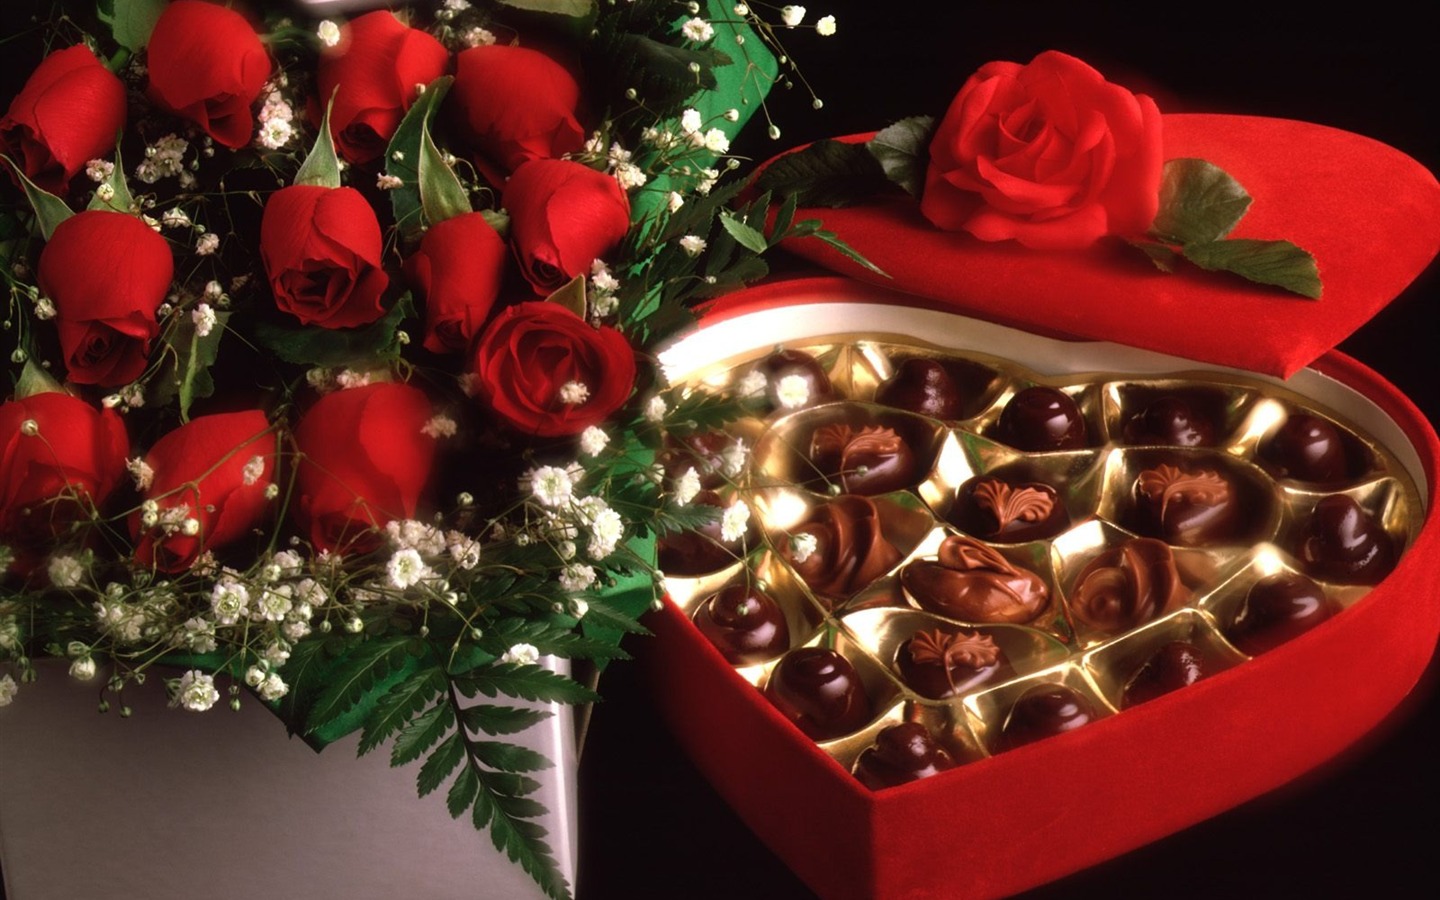 Le indélébile Saint Valentin au chocolat #4 - 1440x900